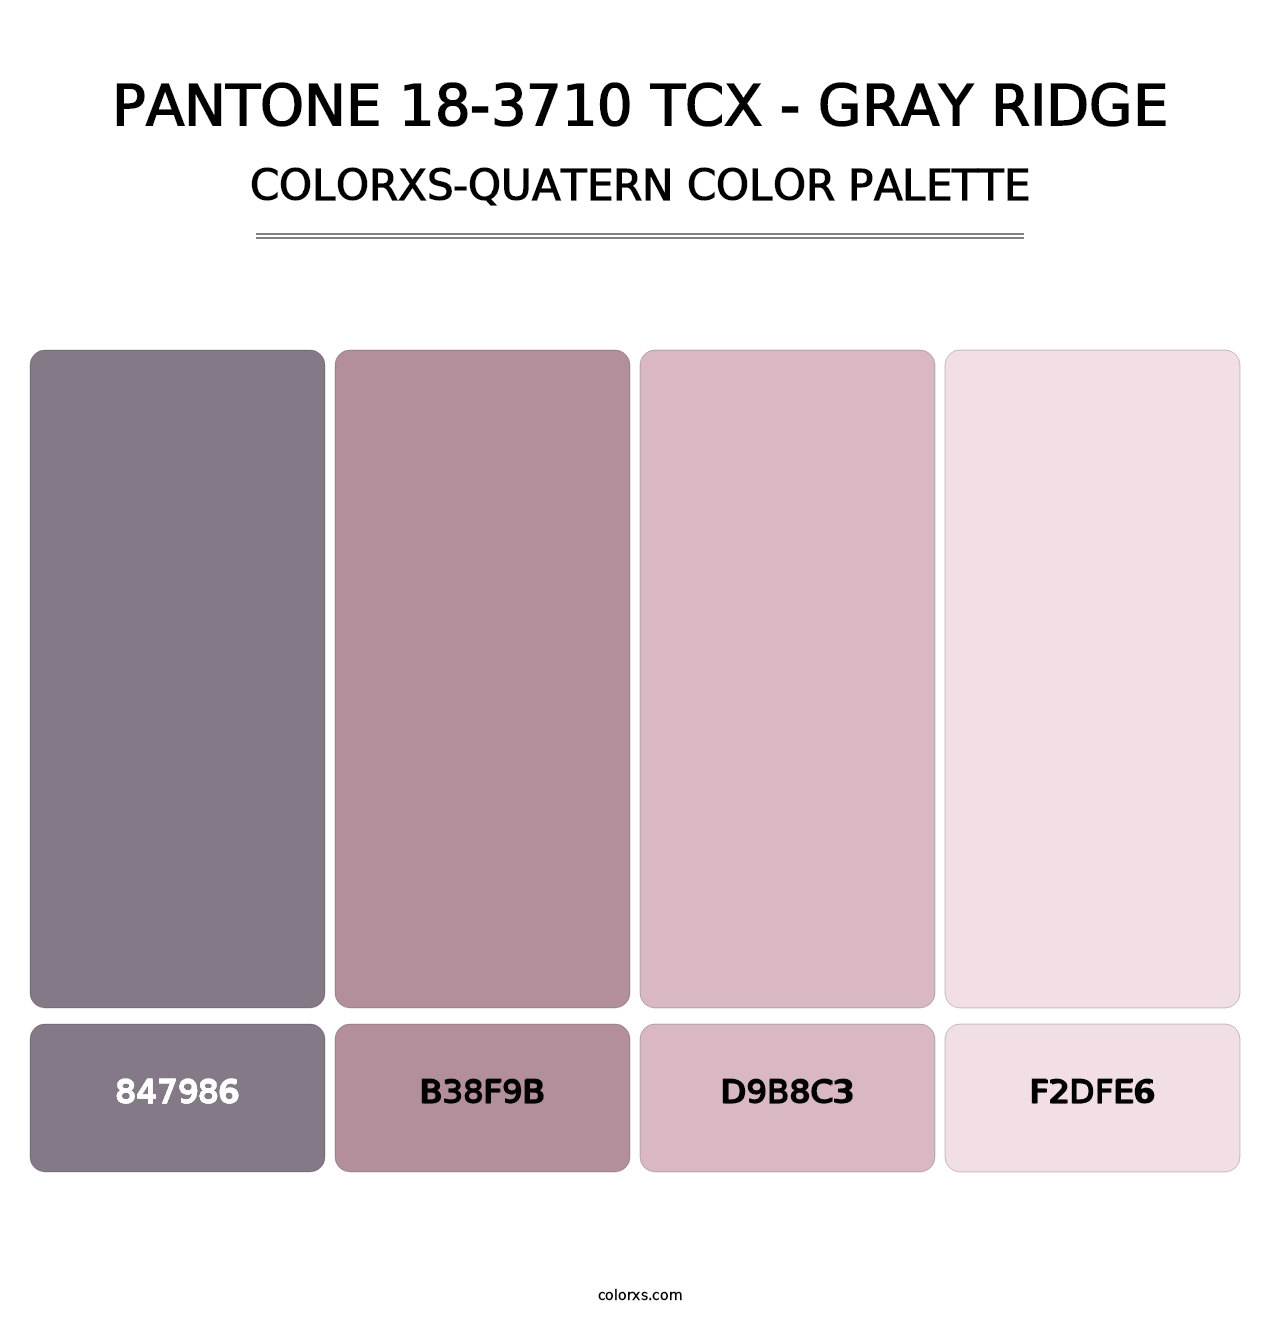 PANTONE 18-3710 TCX - Gray Ridge - Colorxs Quatern Palette